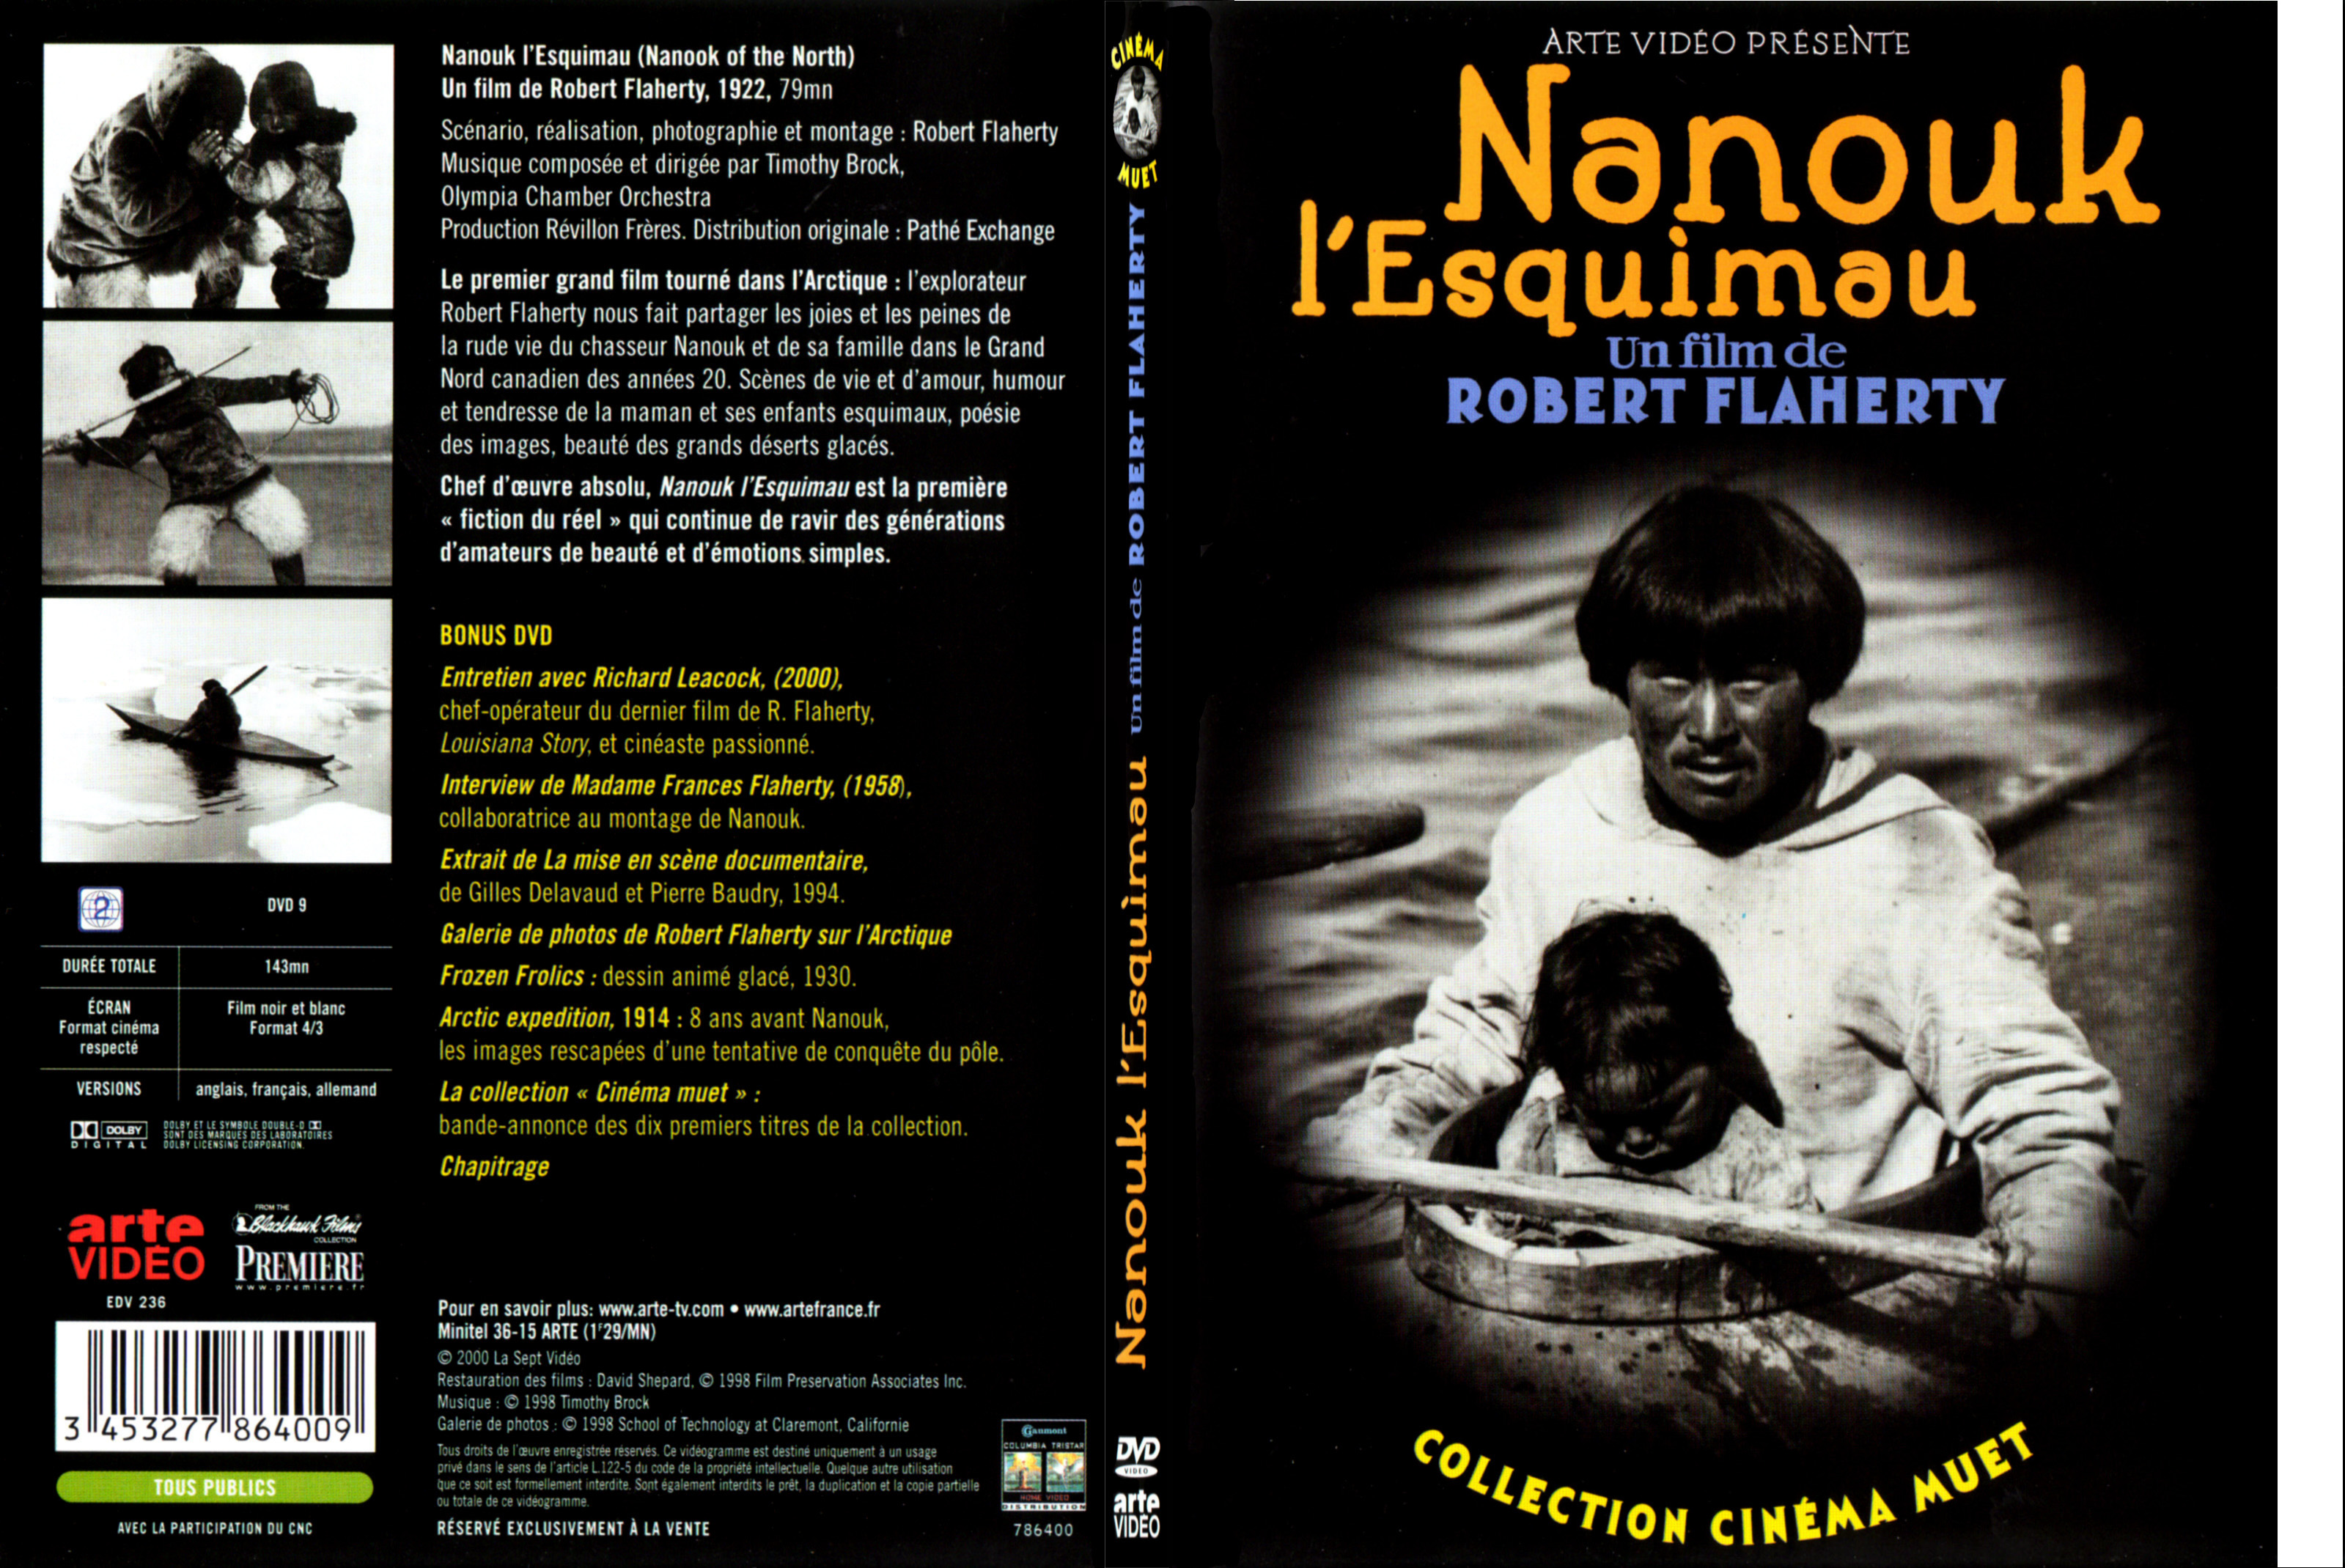 Jaquette DVD Nanouk l